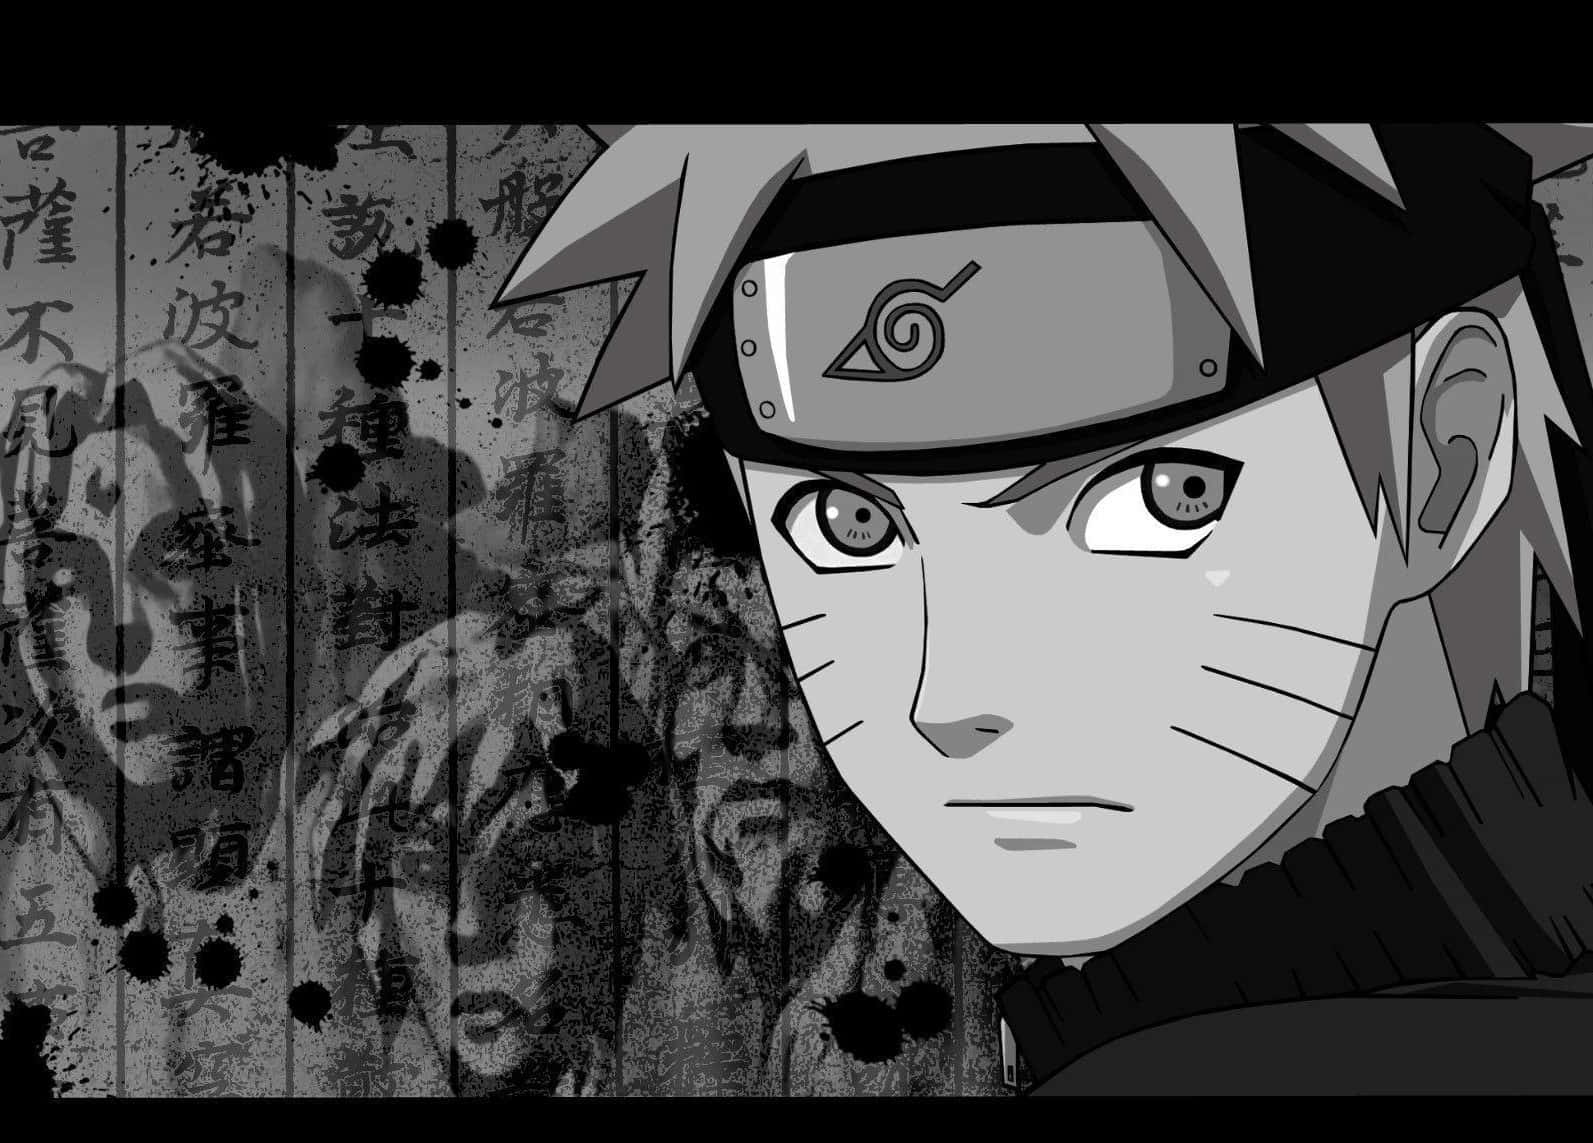 Nell'ombradella Notte, Naruto Nero Discende.